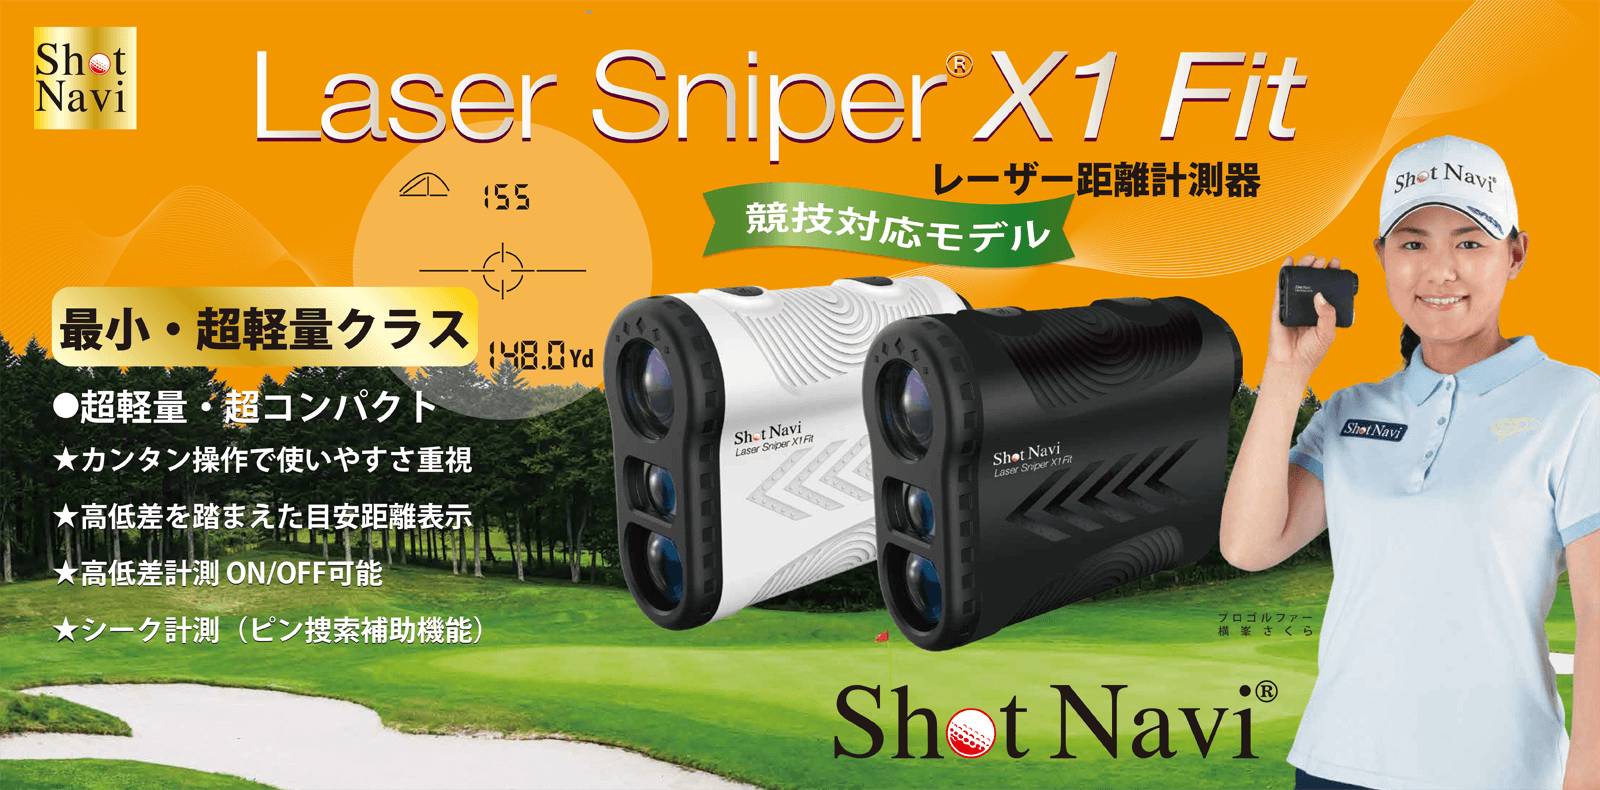 Laser Sniper X1 Fit商品イメージ